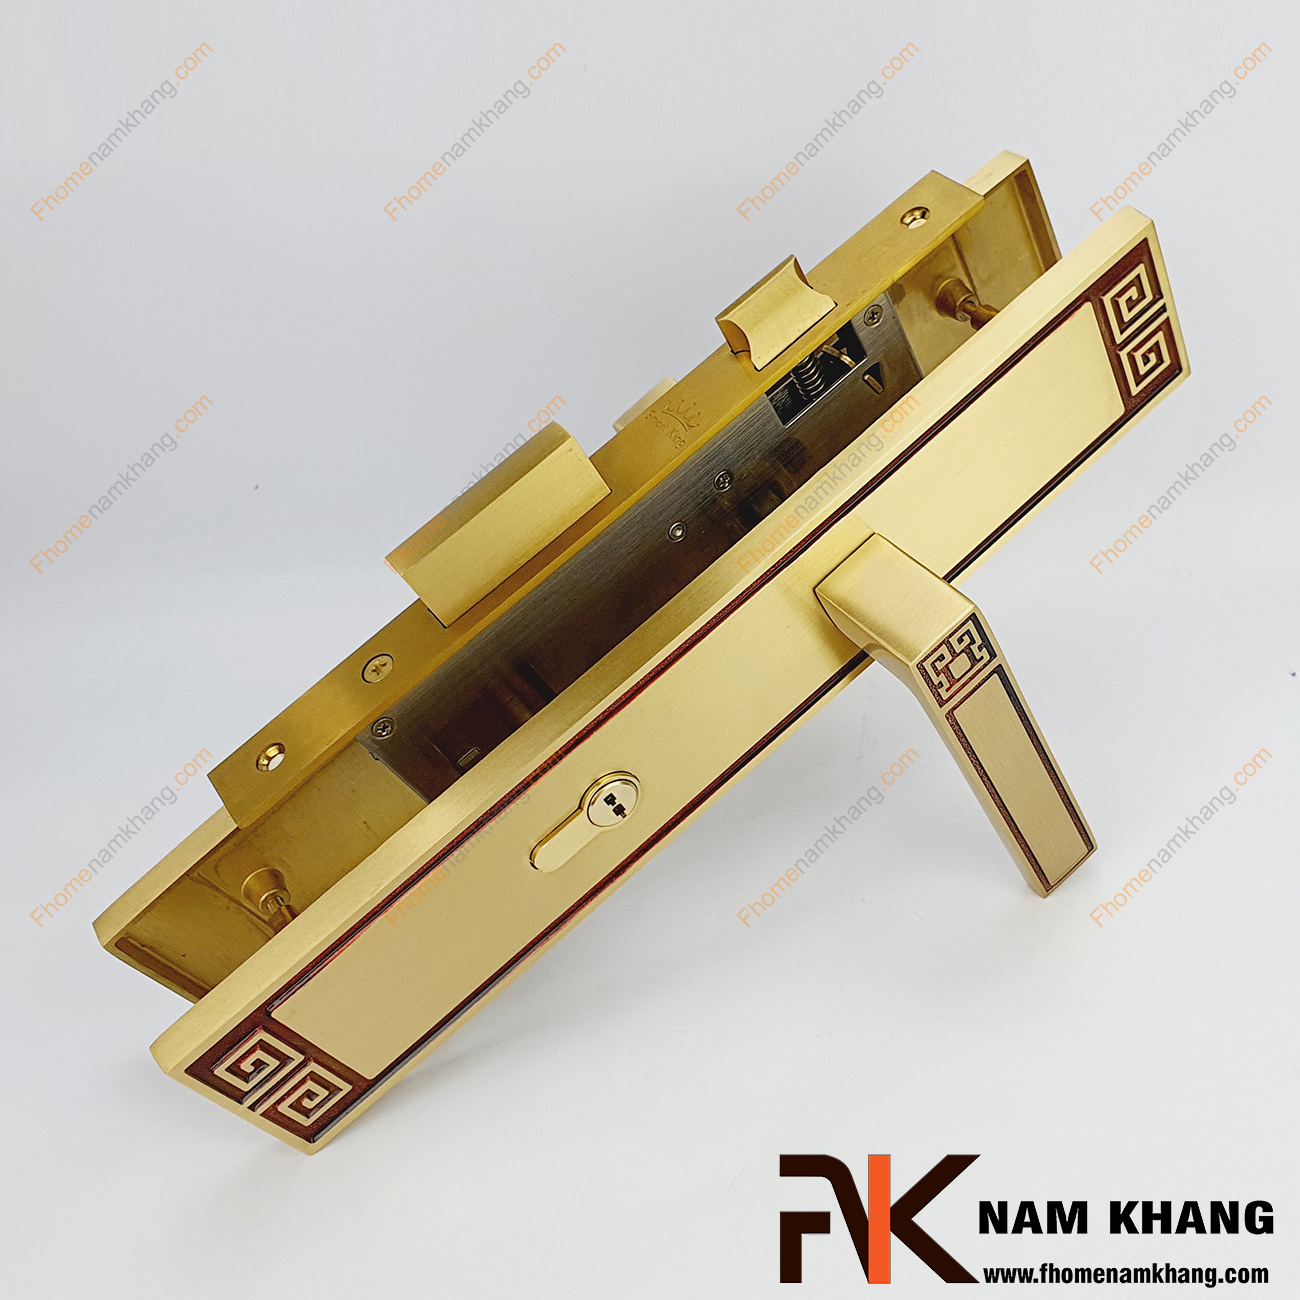 Khóa cửa chính màu đồng vàng viền đỏ NK560L-RC là bộ khóa cửa dành chi các dạng cửa chính lớn, cao cấp, cửa 2 cánh hoặc 4 cánh.